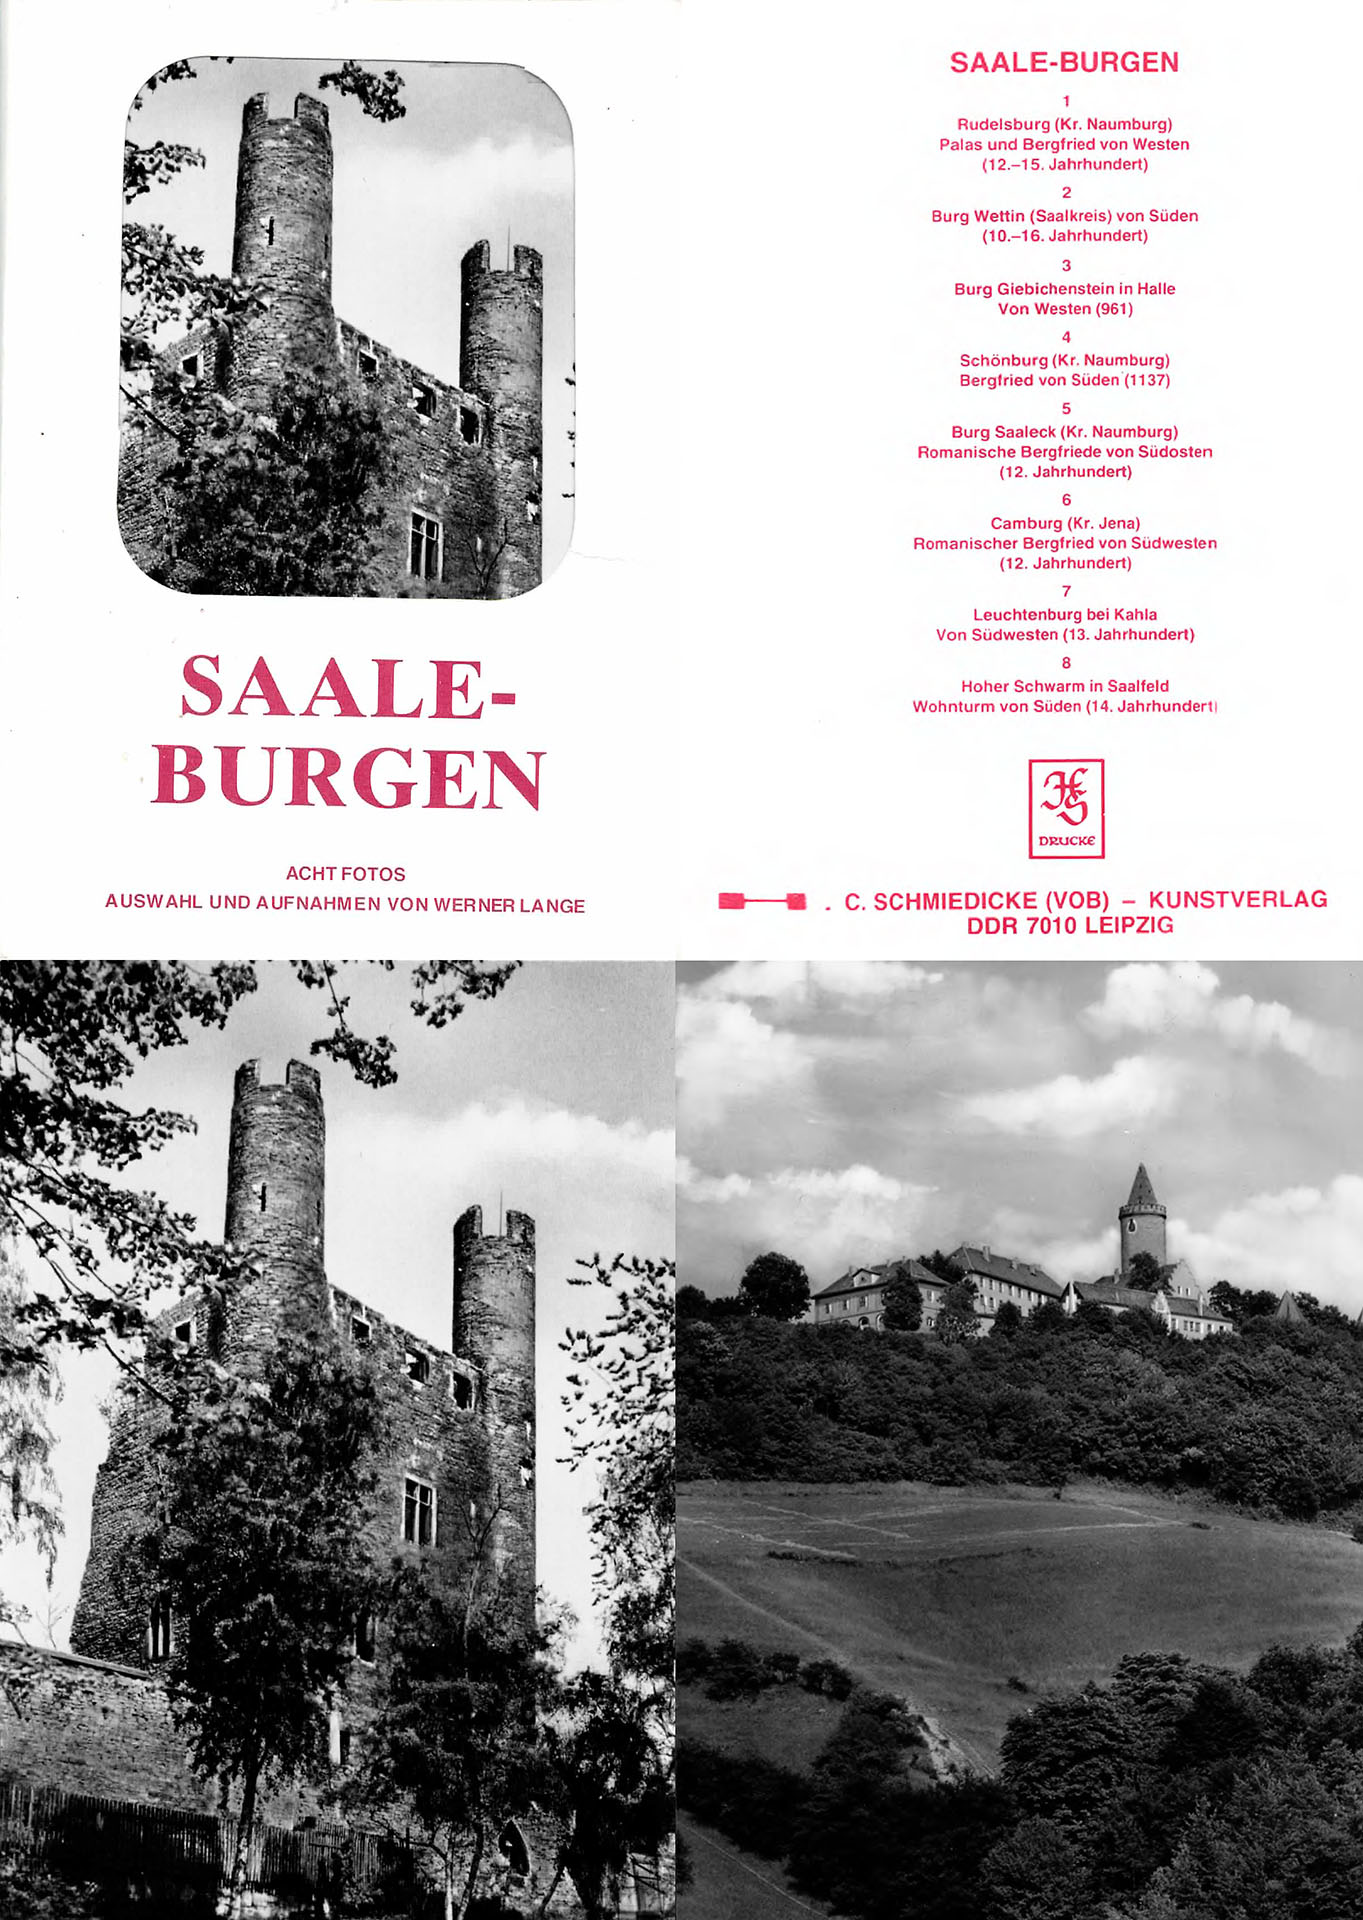 Saale Burgen